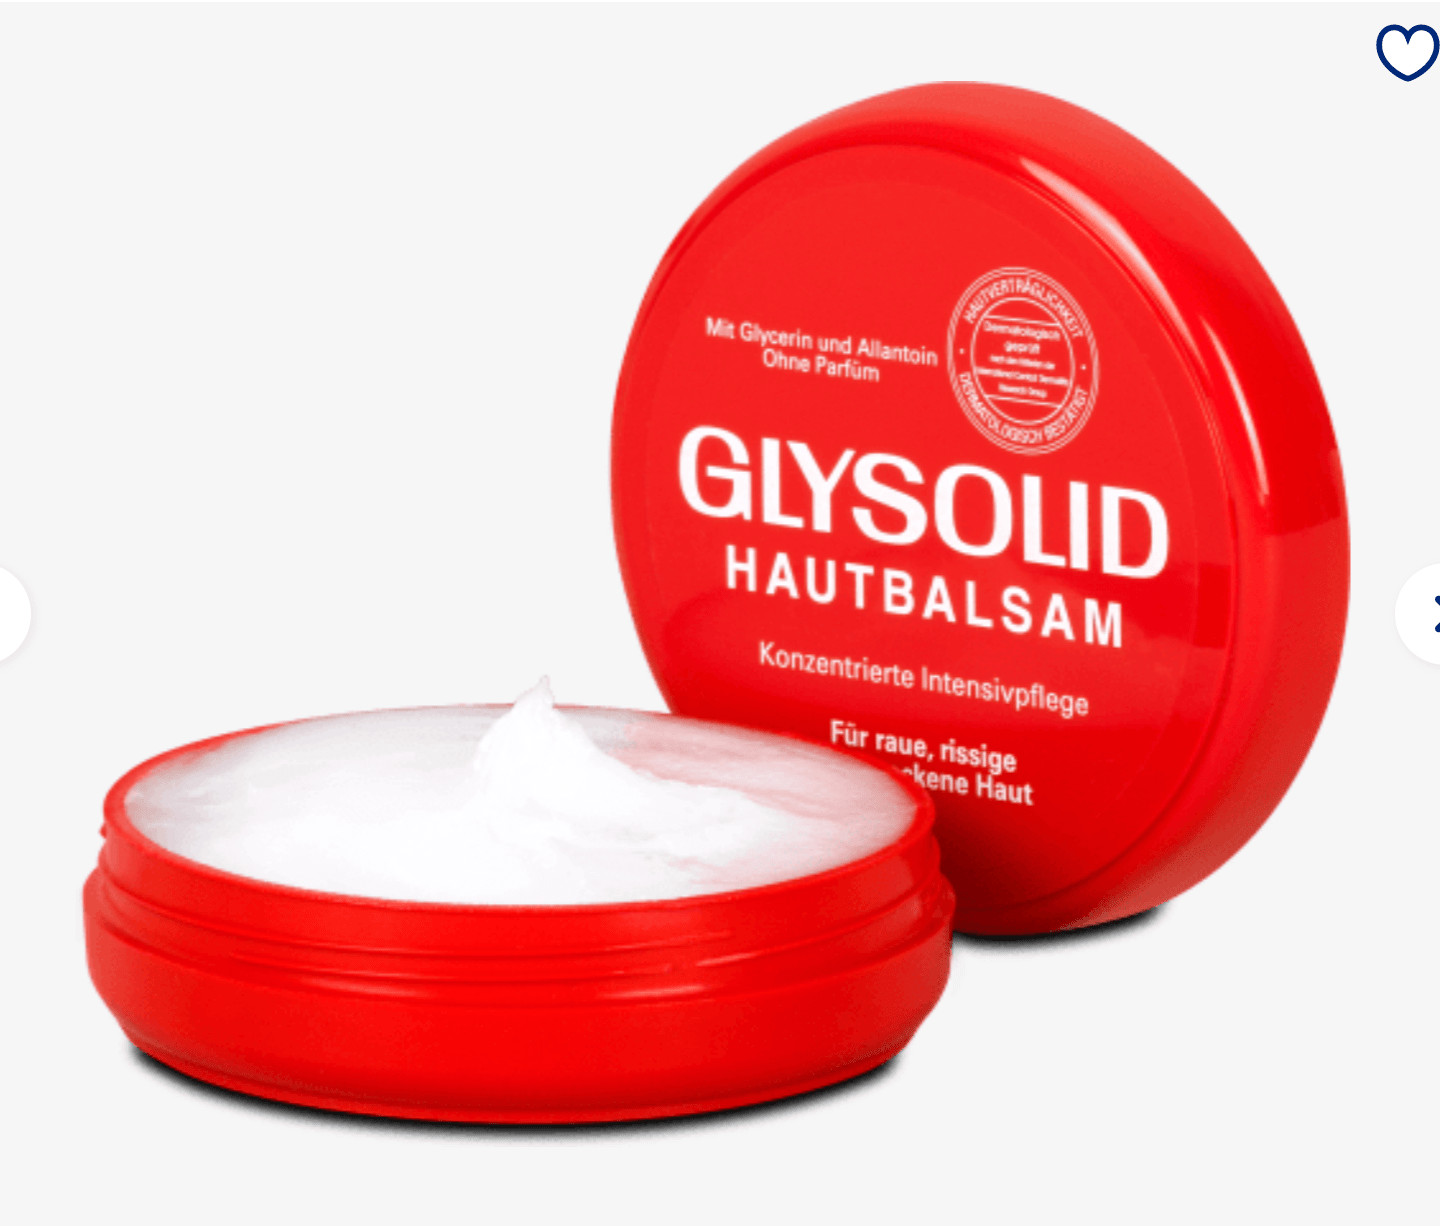 Kem Nẻ Glysolid Hautbalsam, 100 ml - Hàng Xách Tay Đức